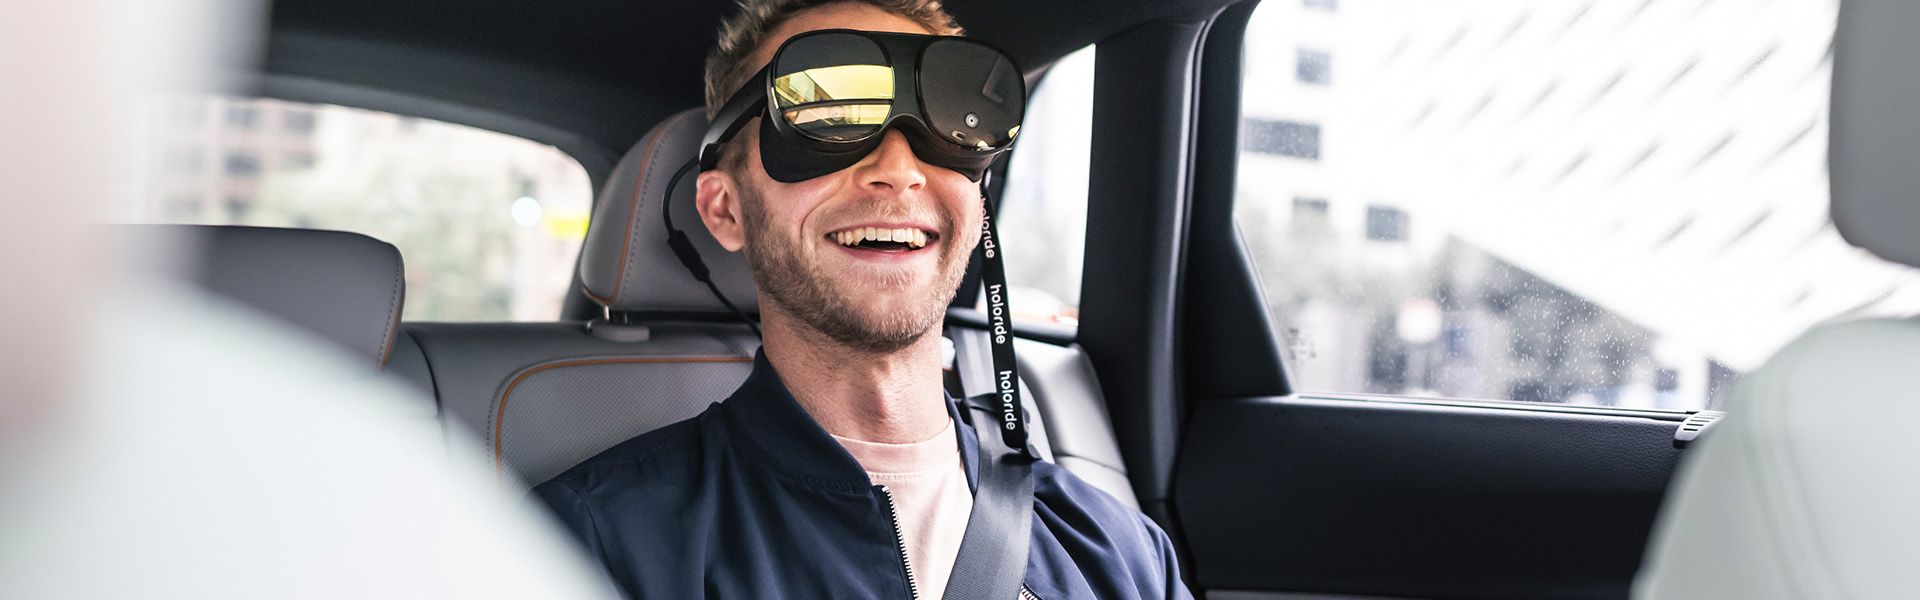 Mann mit VR Brille im Auto